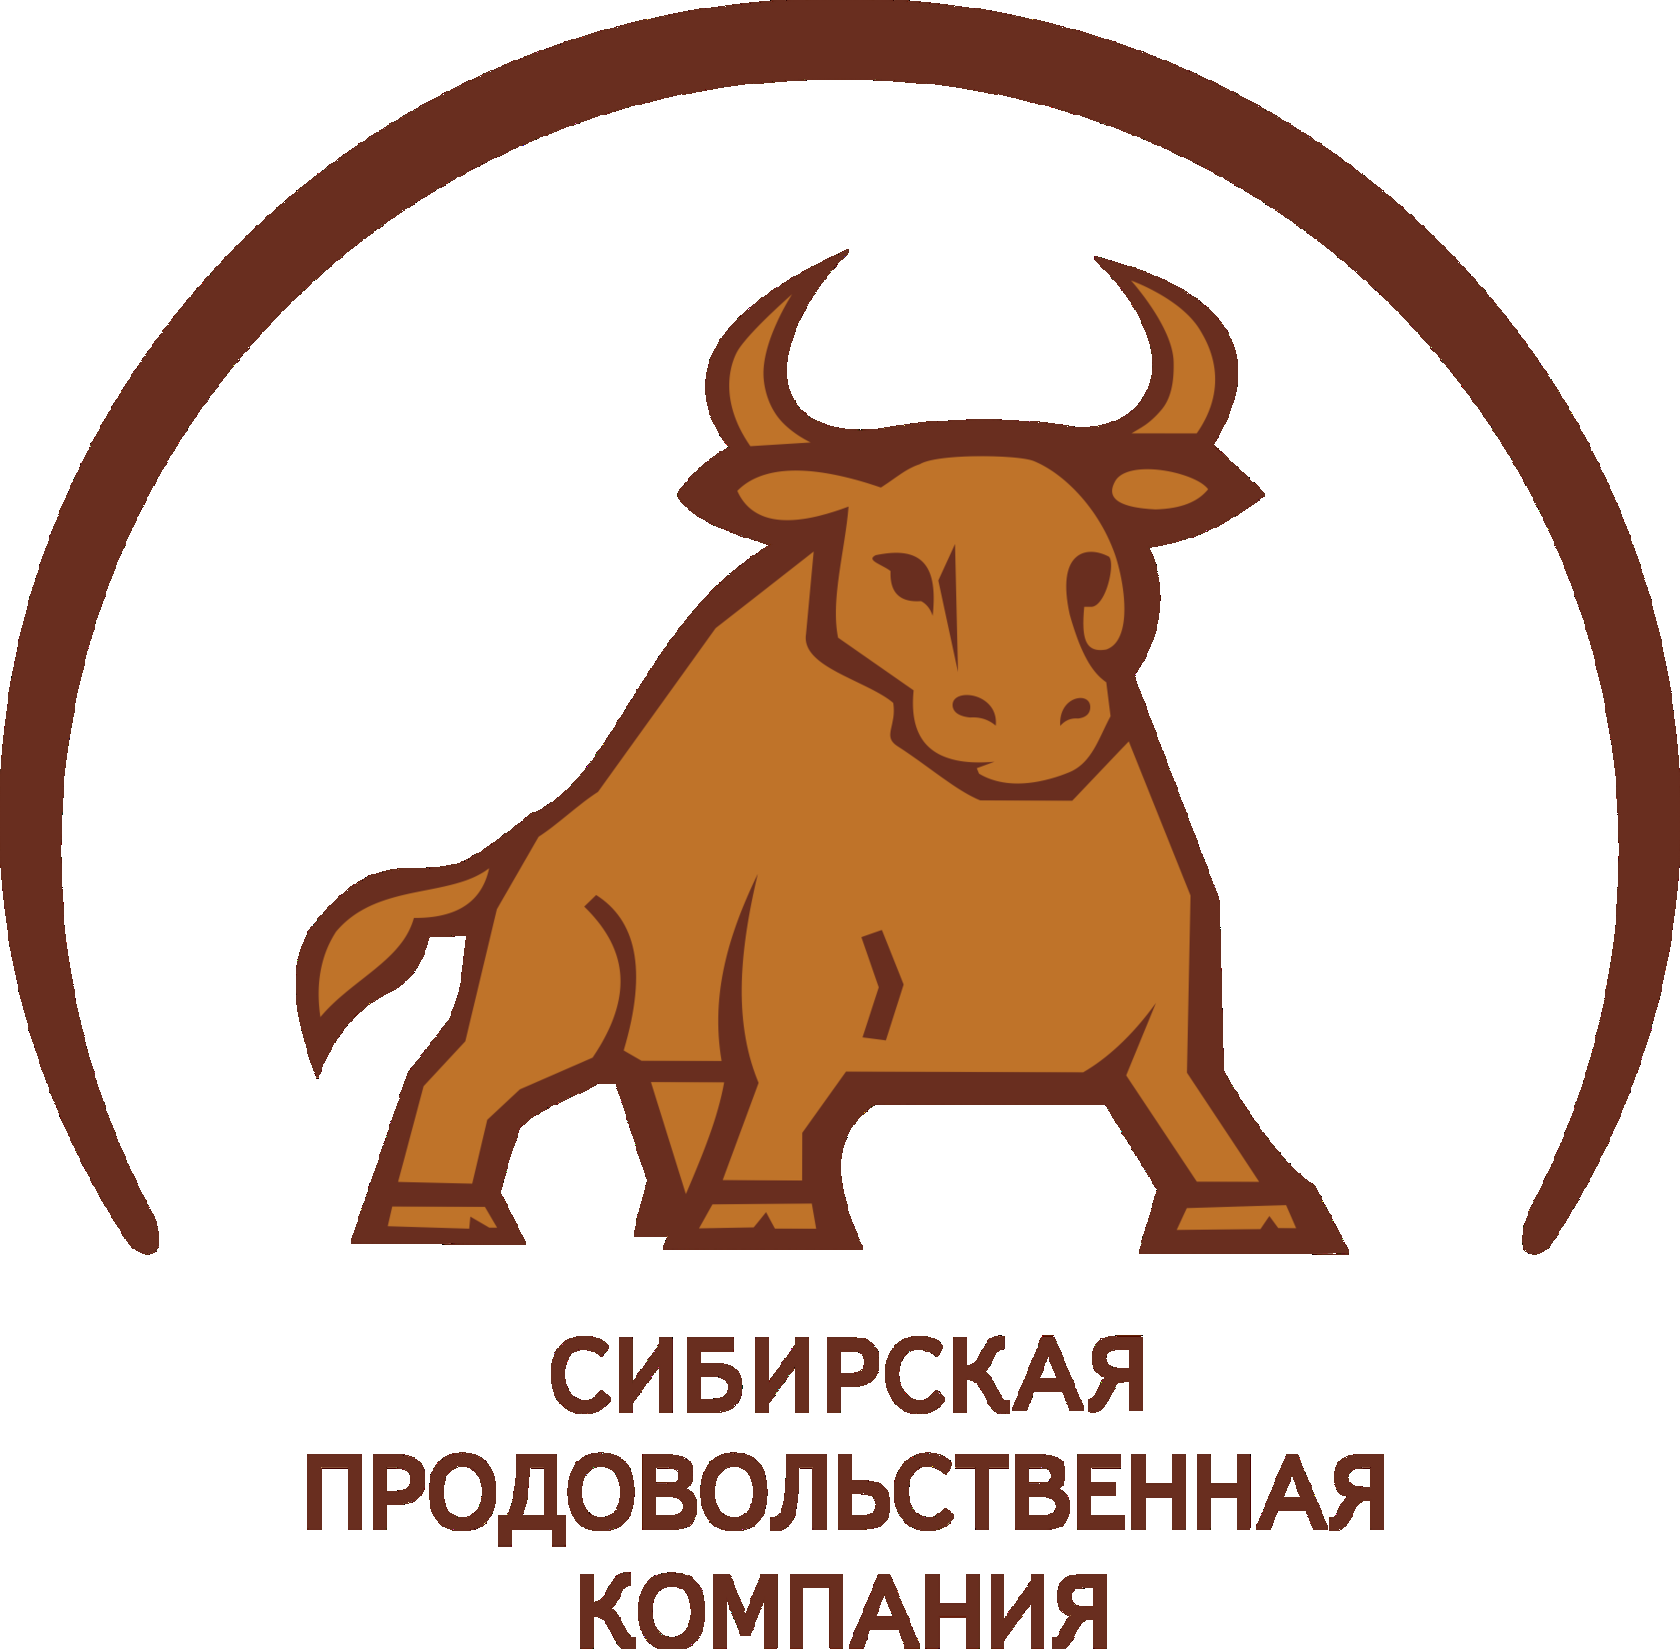 Ооо продуктовые. Сибирская продовольственная компания Новосибирск. Сибирская продовольственная компания логотип. СПК Новосибирск мясокомбинат. Сургутский политехнический колледж логотип.